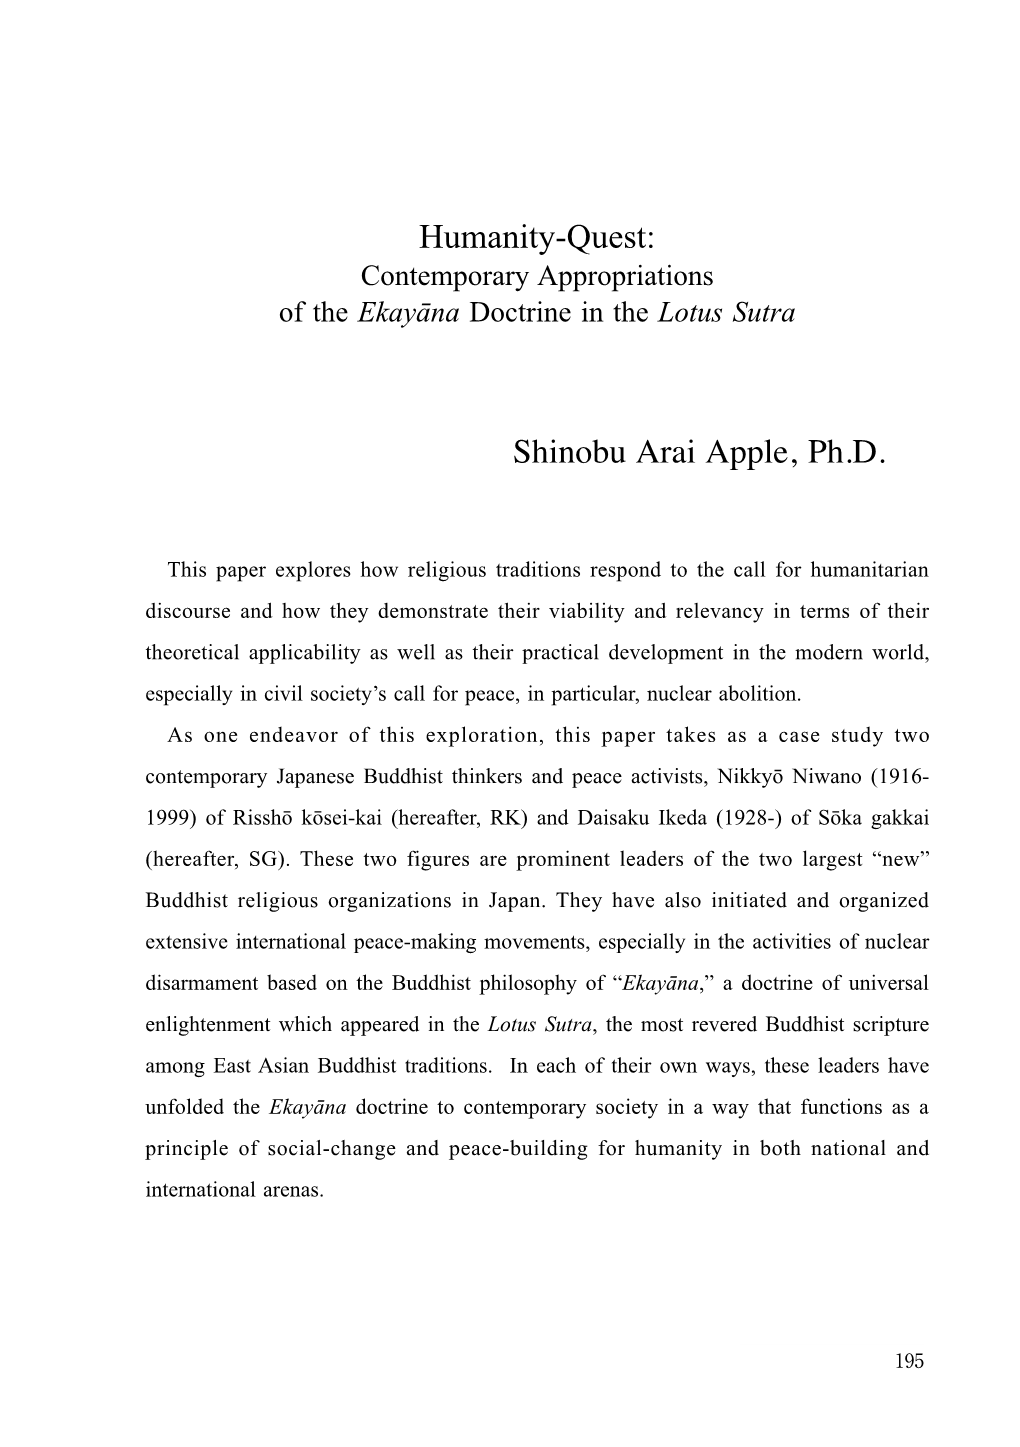 Humanity-Quest: Shinobu Arai Apple, Ph.D